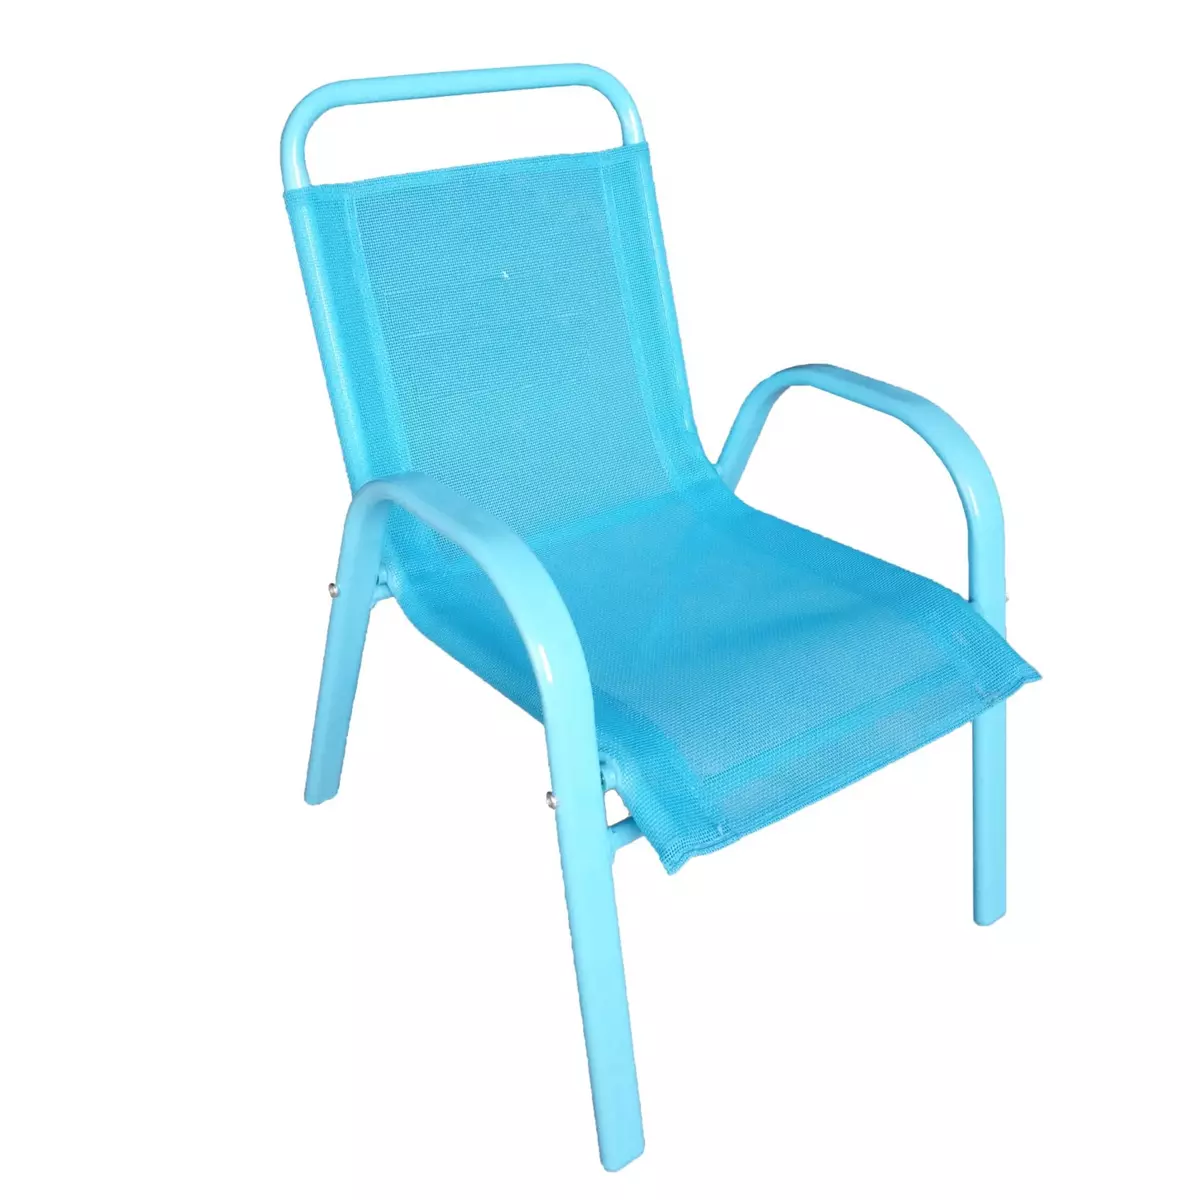 Chaise de jardin enfant bleu